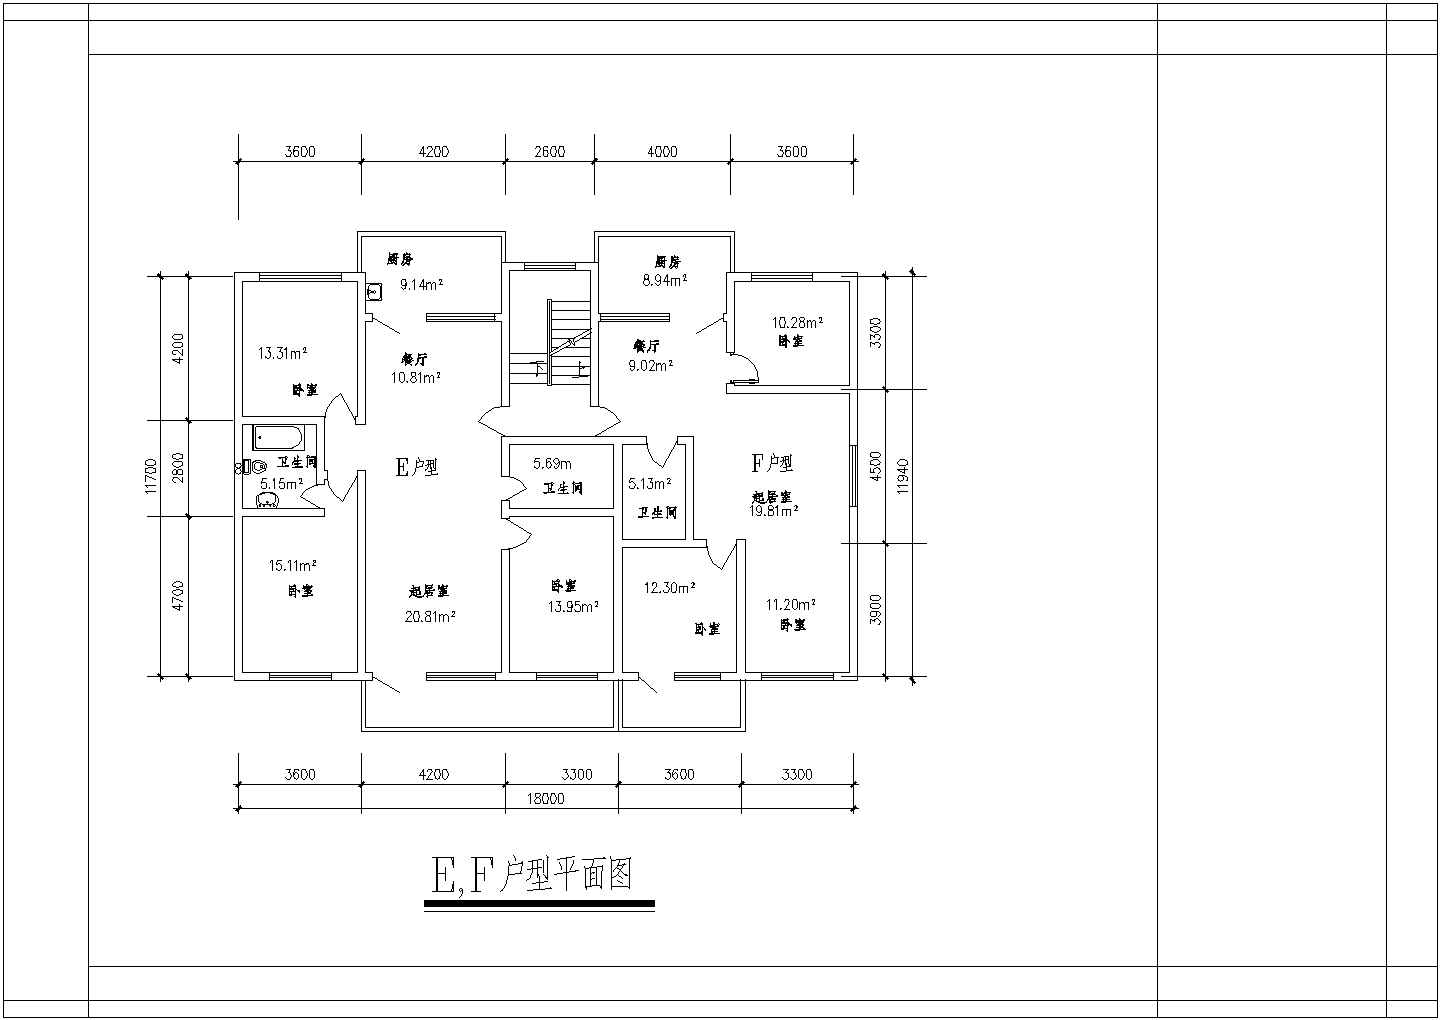 江西省德兴市某小区内高层建筑装修设计图【1梯2户每户120至130平米2个 130至140平米3个】